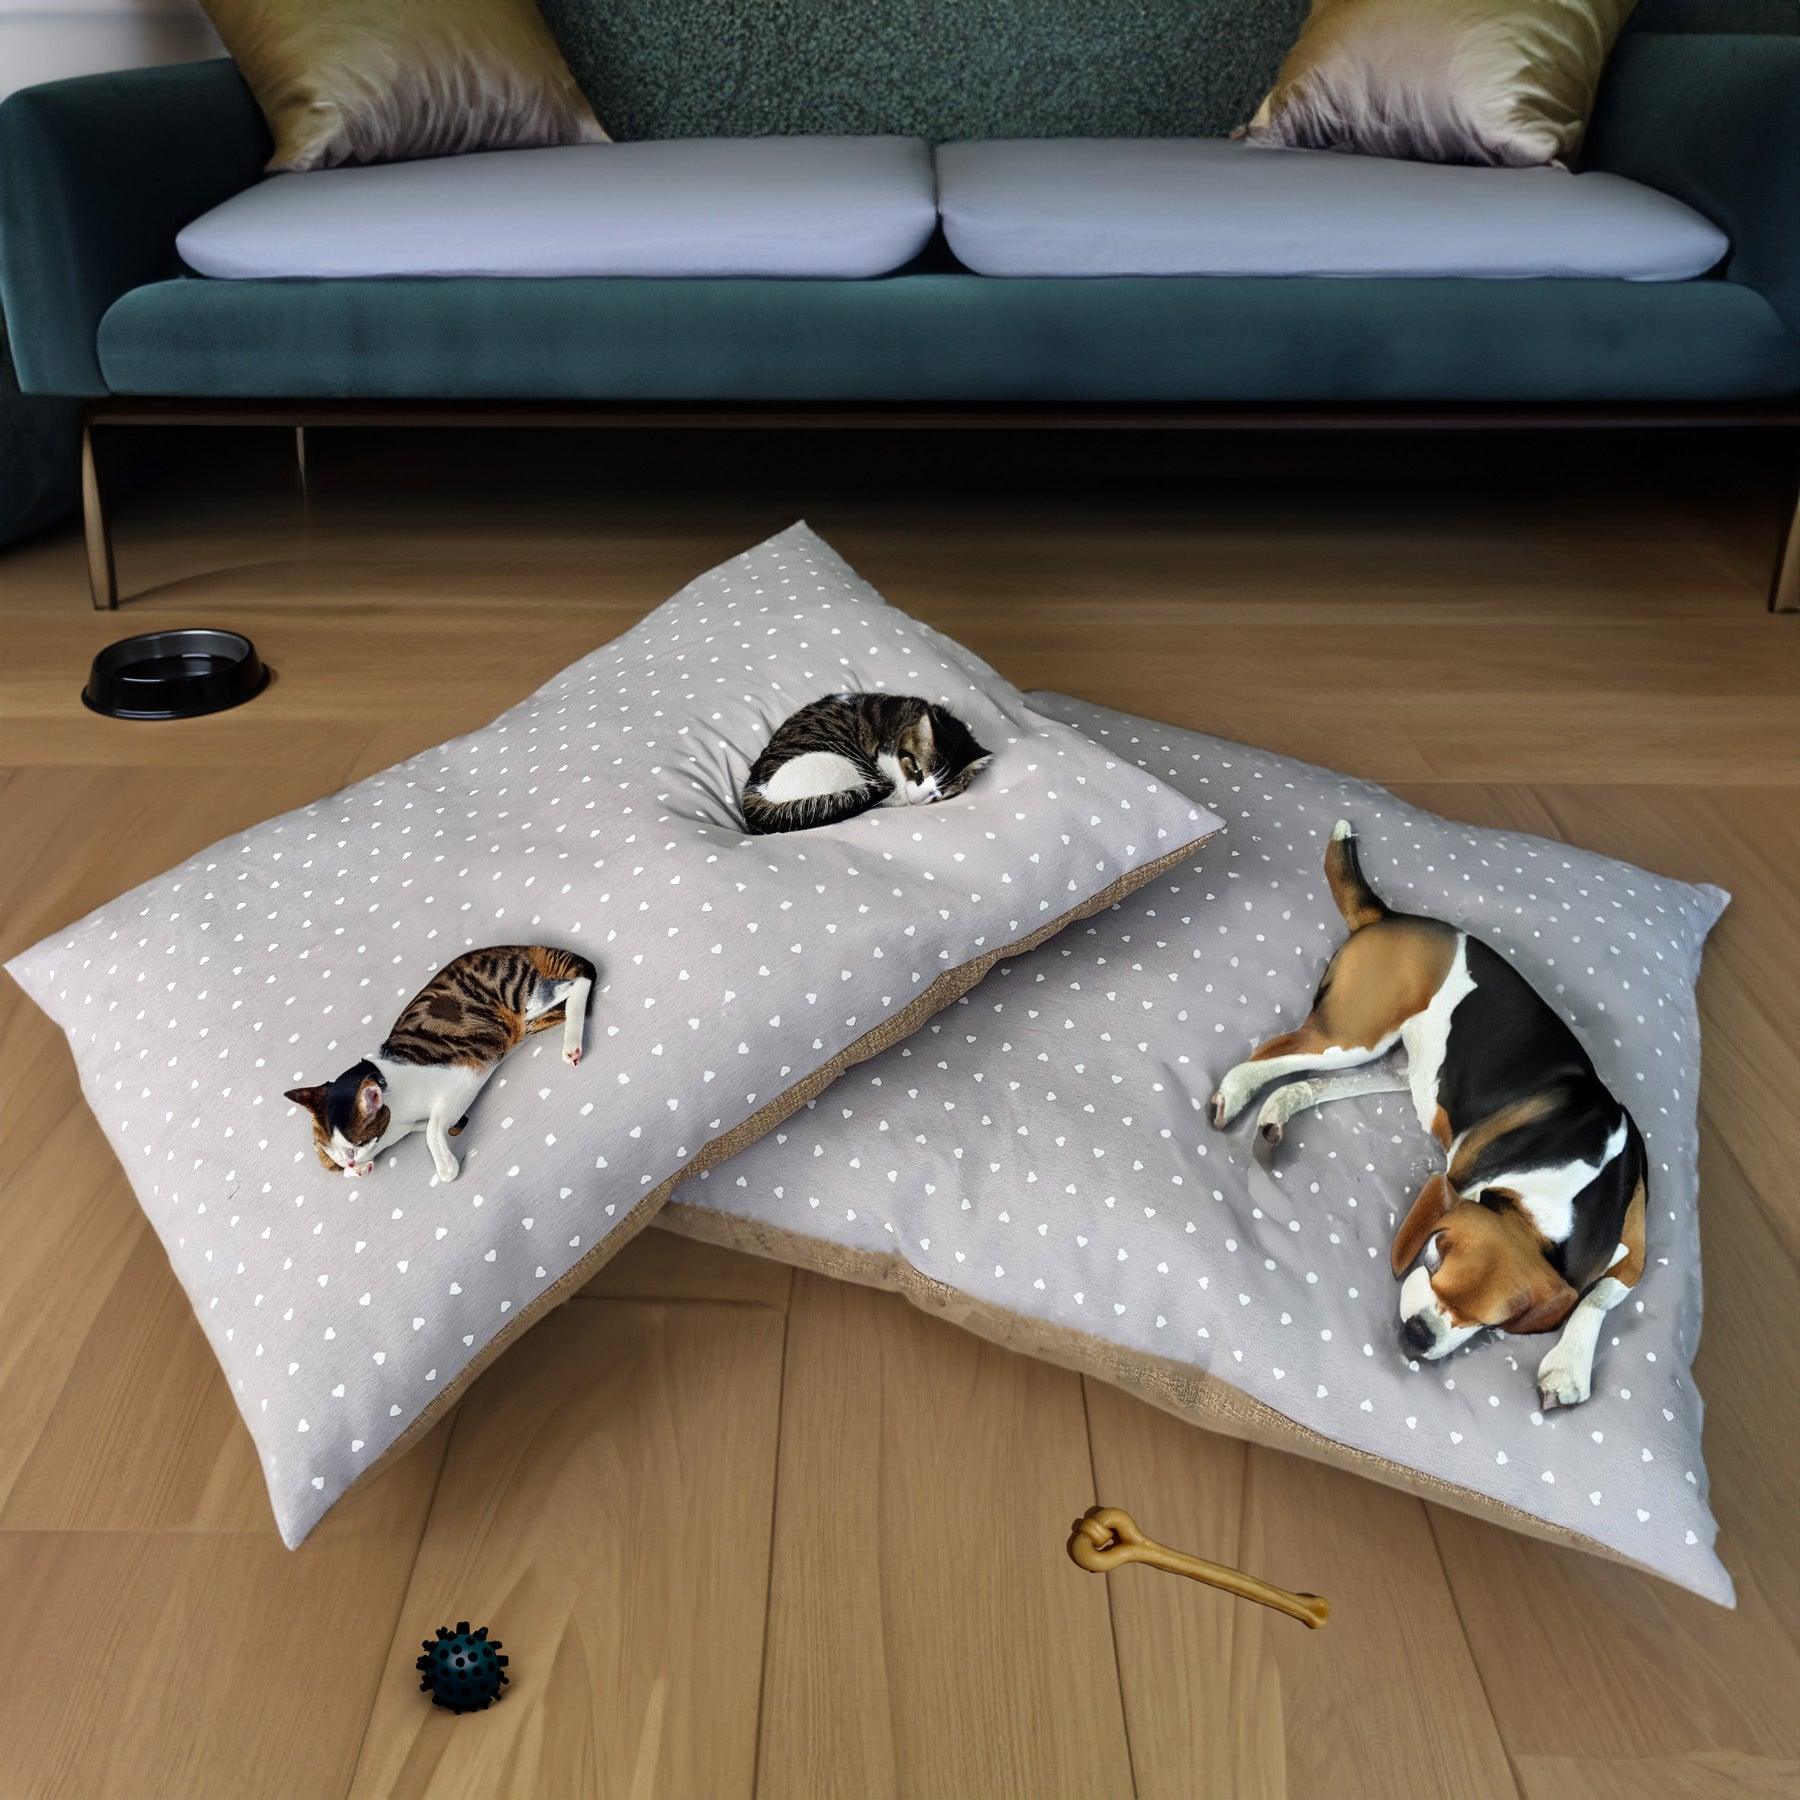 Cuscino PIPPO per cani e gatti antigraffio e lavabile - Comfort e durata per i tuoi amici pelosi su Beliamo.com